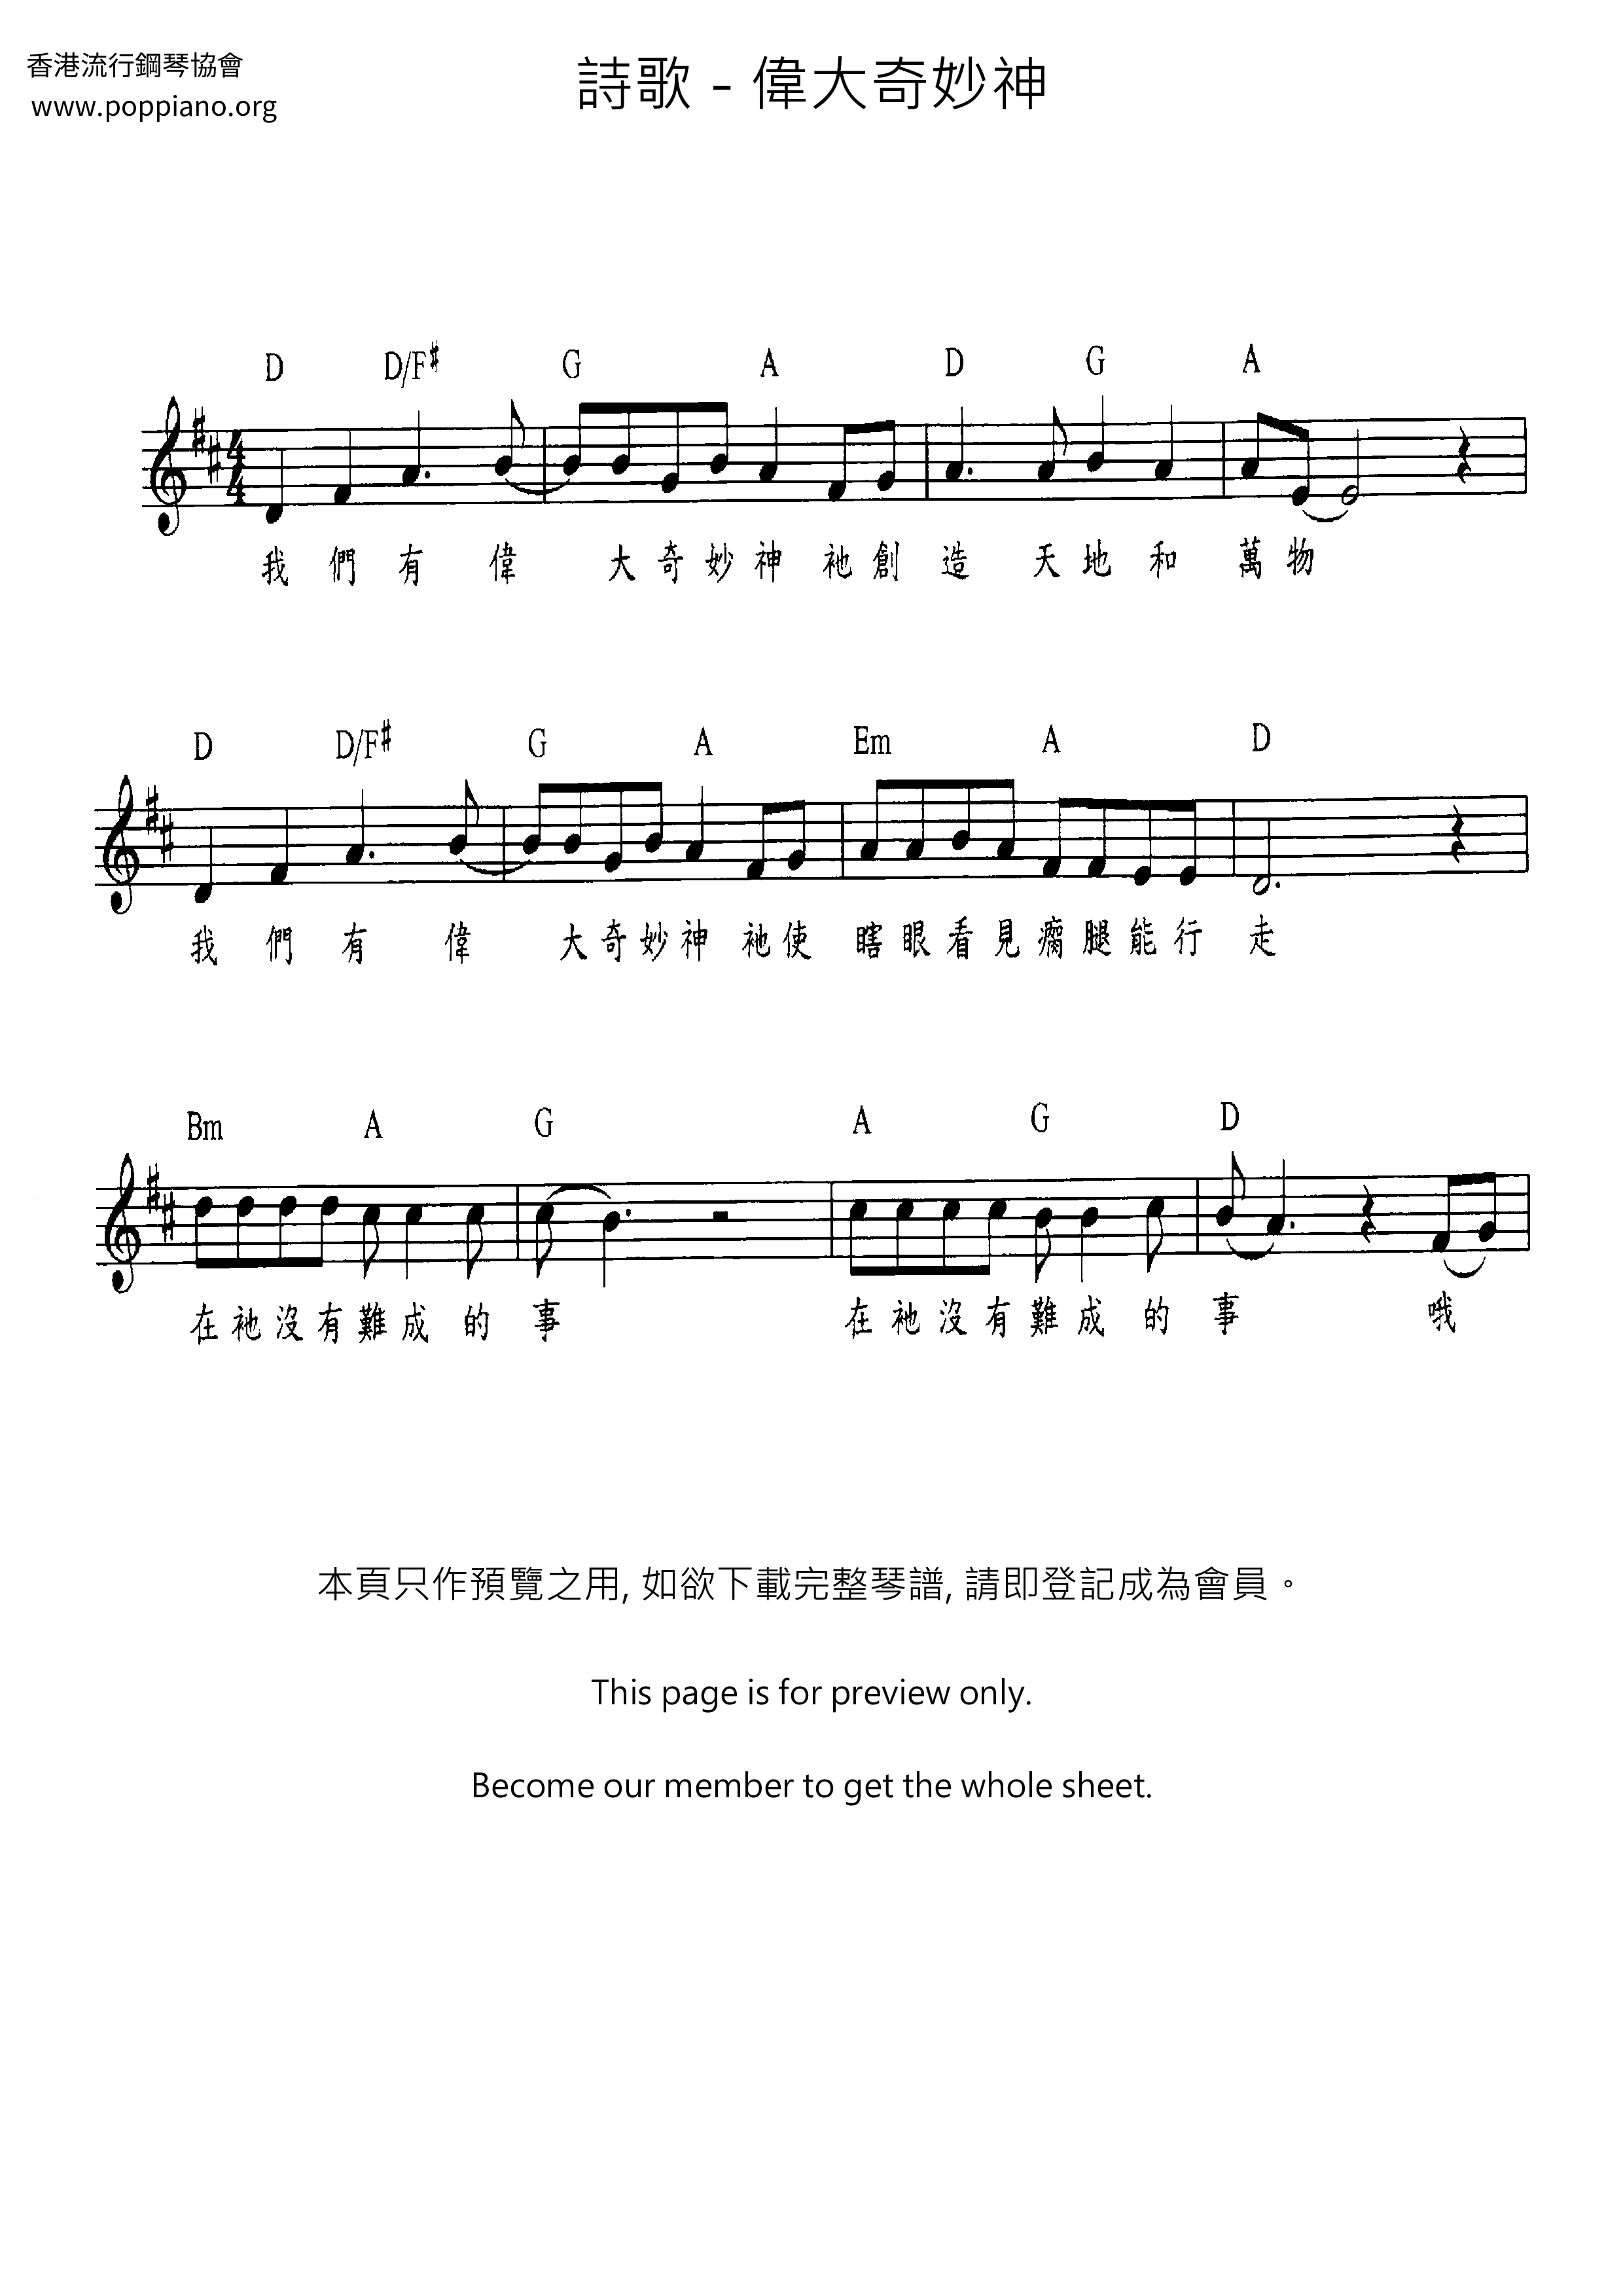 诗歌 伟大奇妙神琴谱 五线谱pdf 香港流行钢琴协会琴谱下载